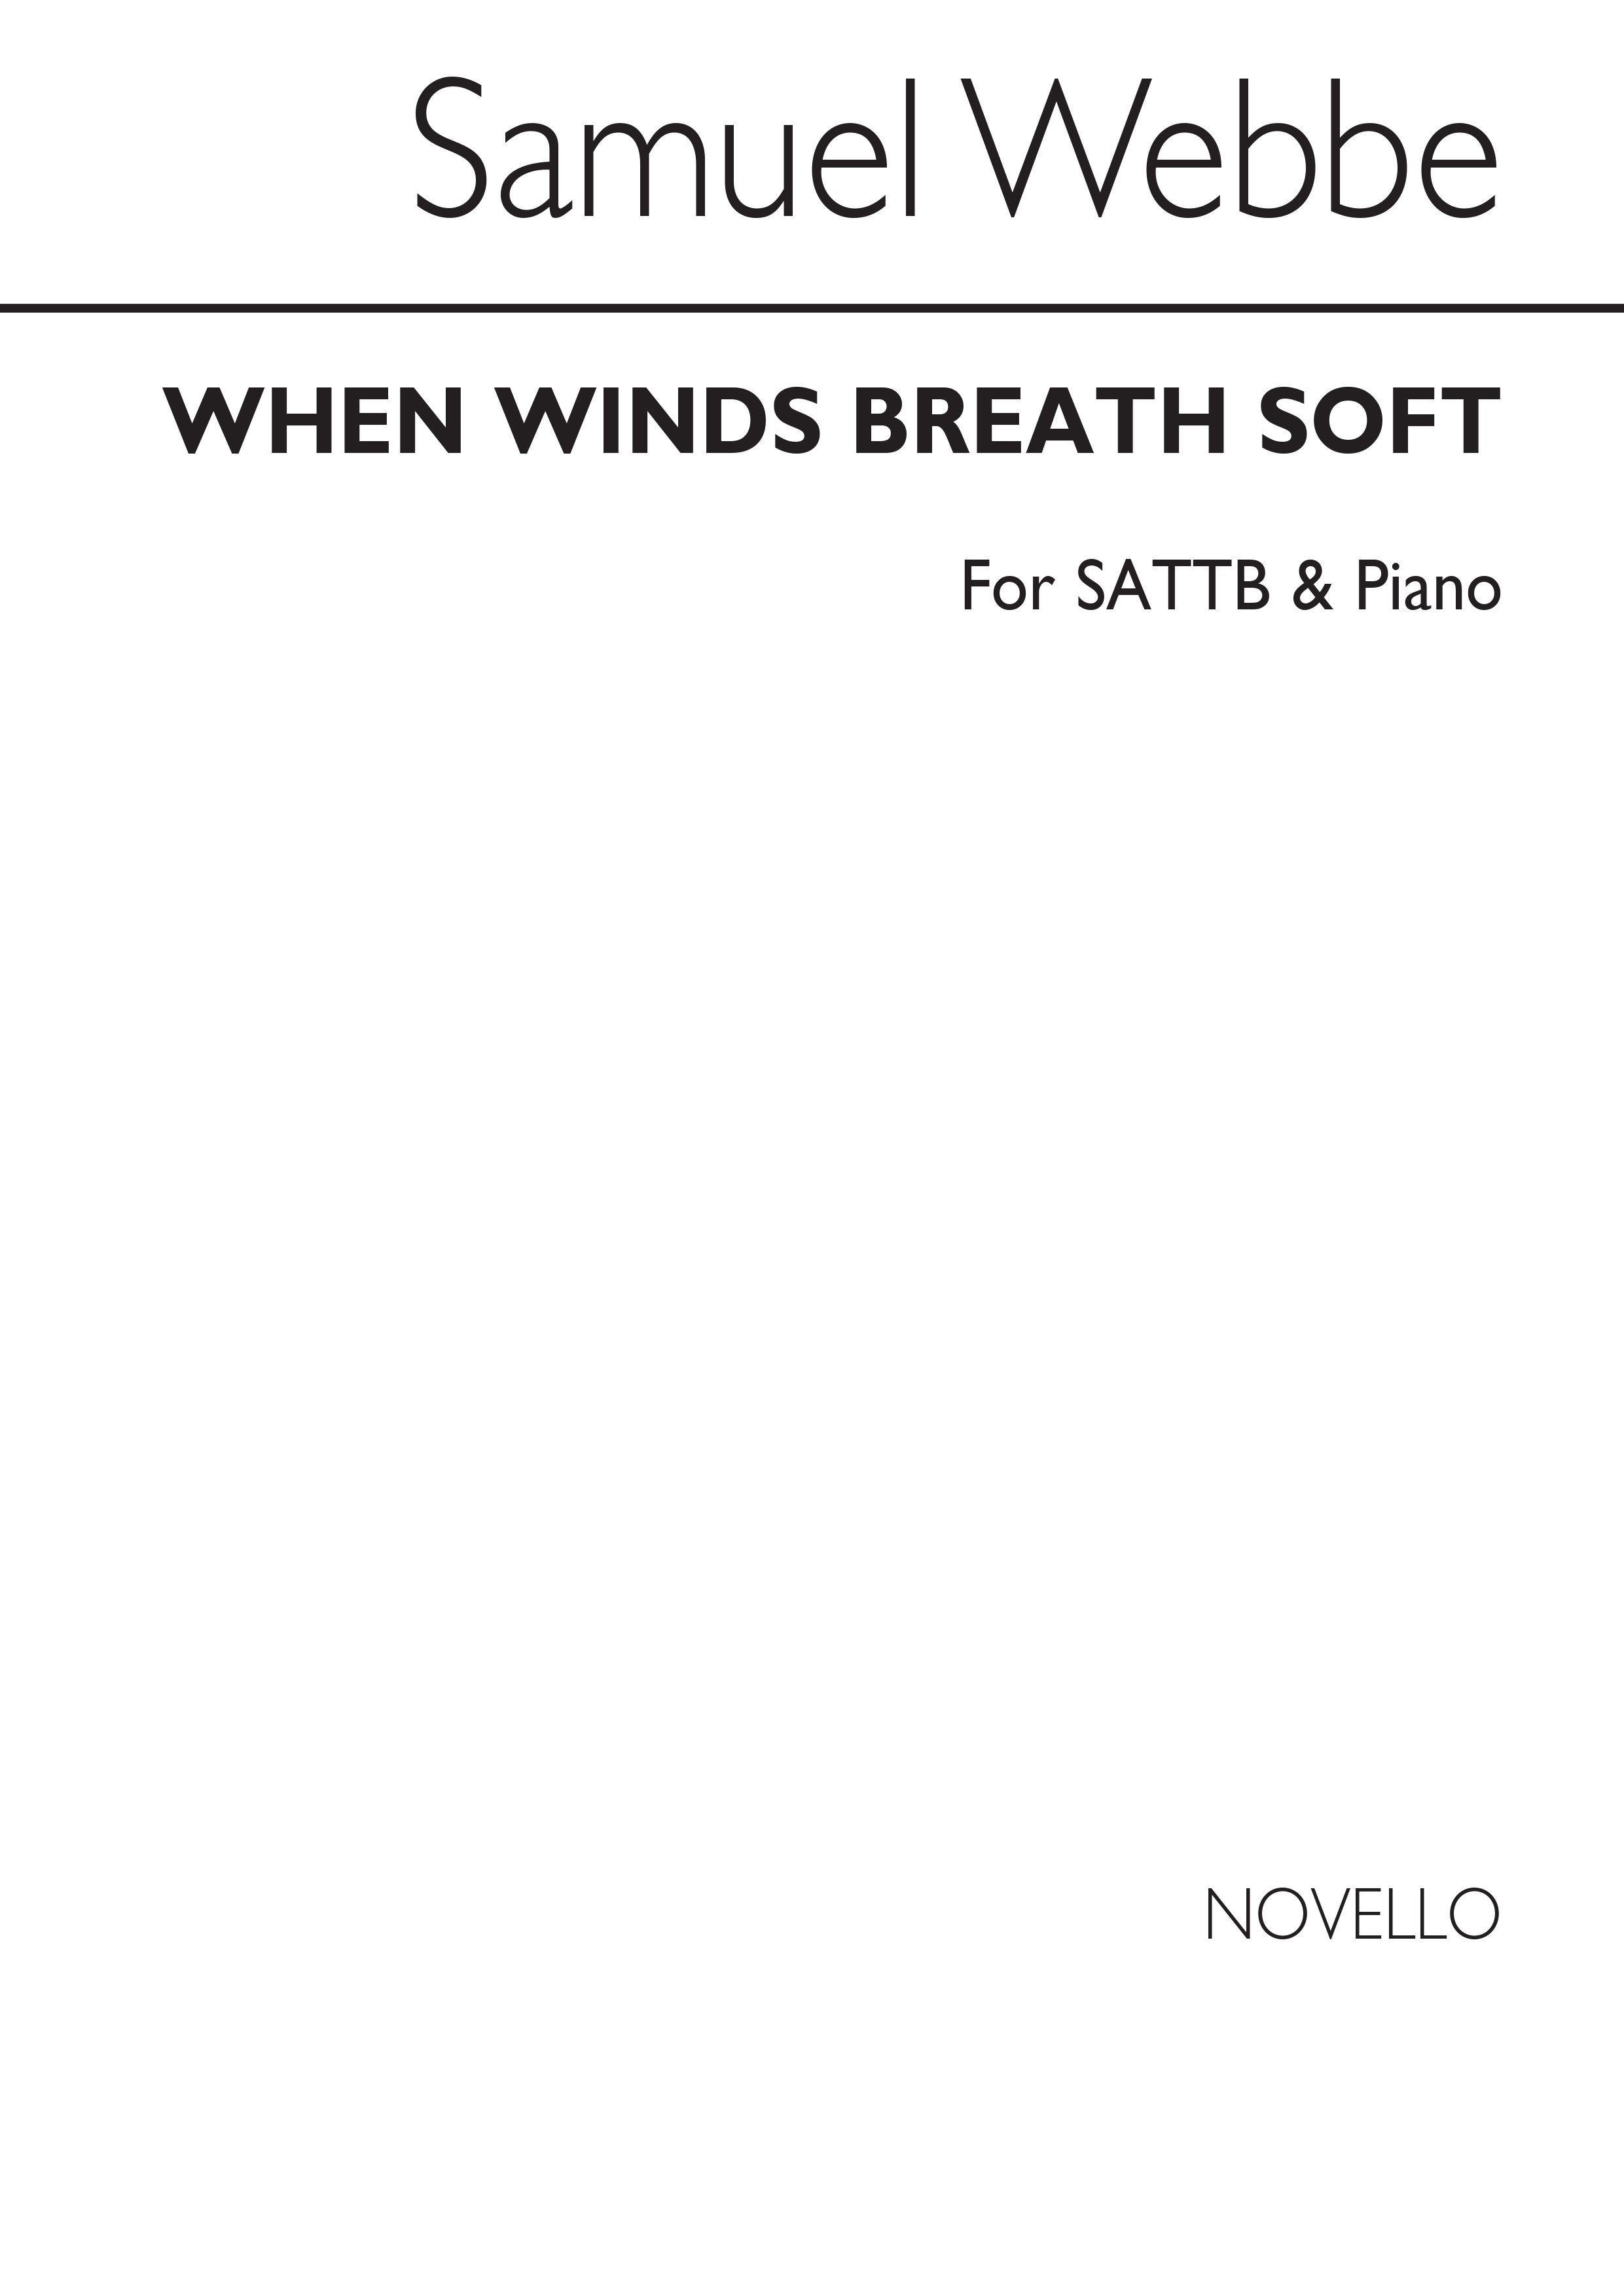 Samuel Webbe: When Winds Breathe Soft